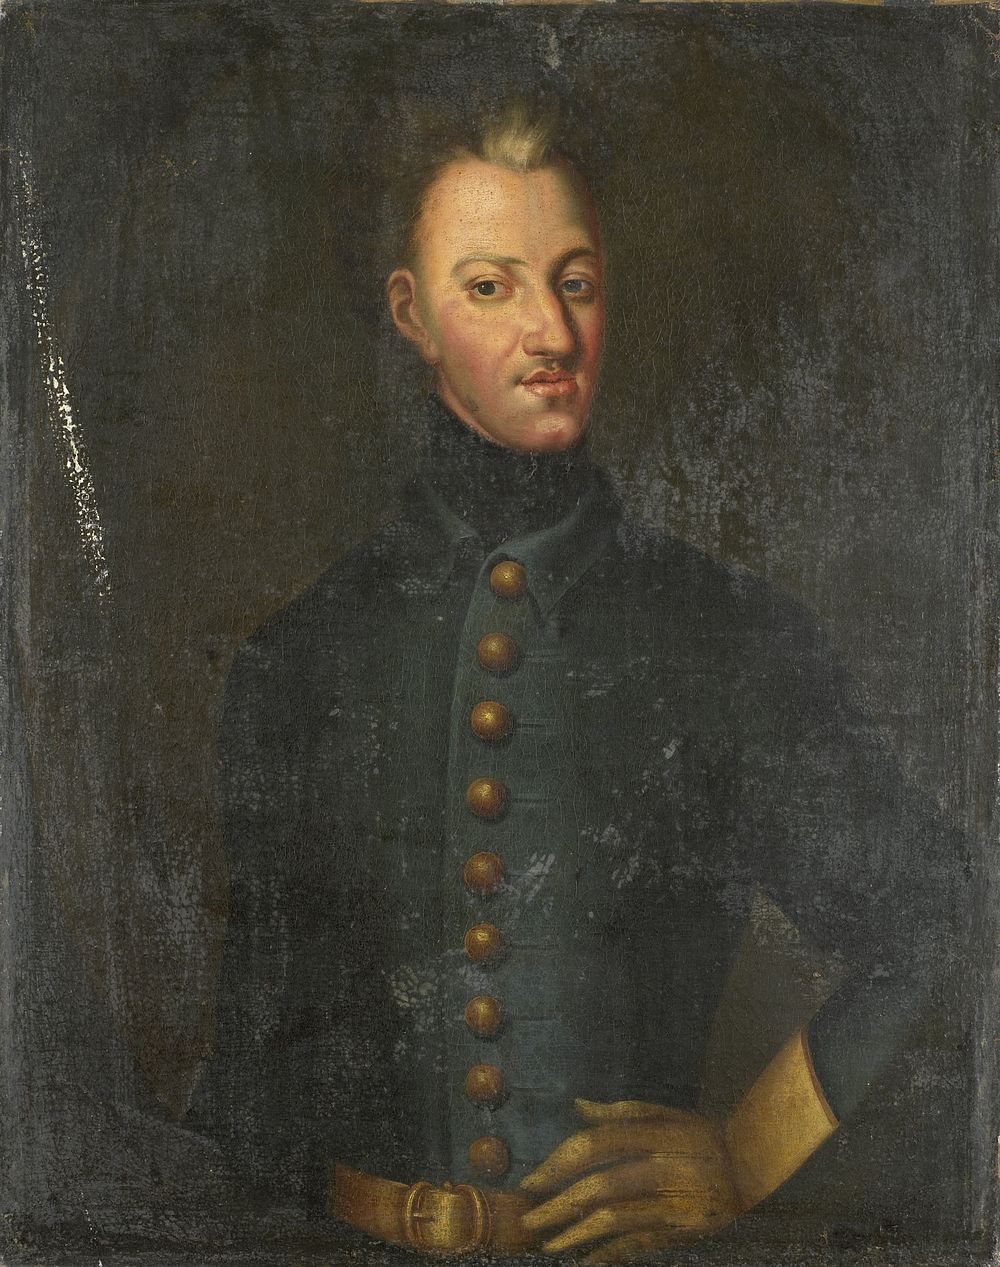 Charles XII (1682-1718), King of Sweden (1700 - 1750) by David von Krafft